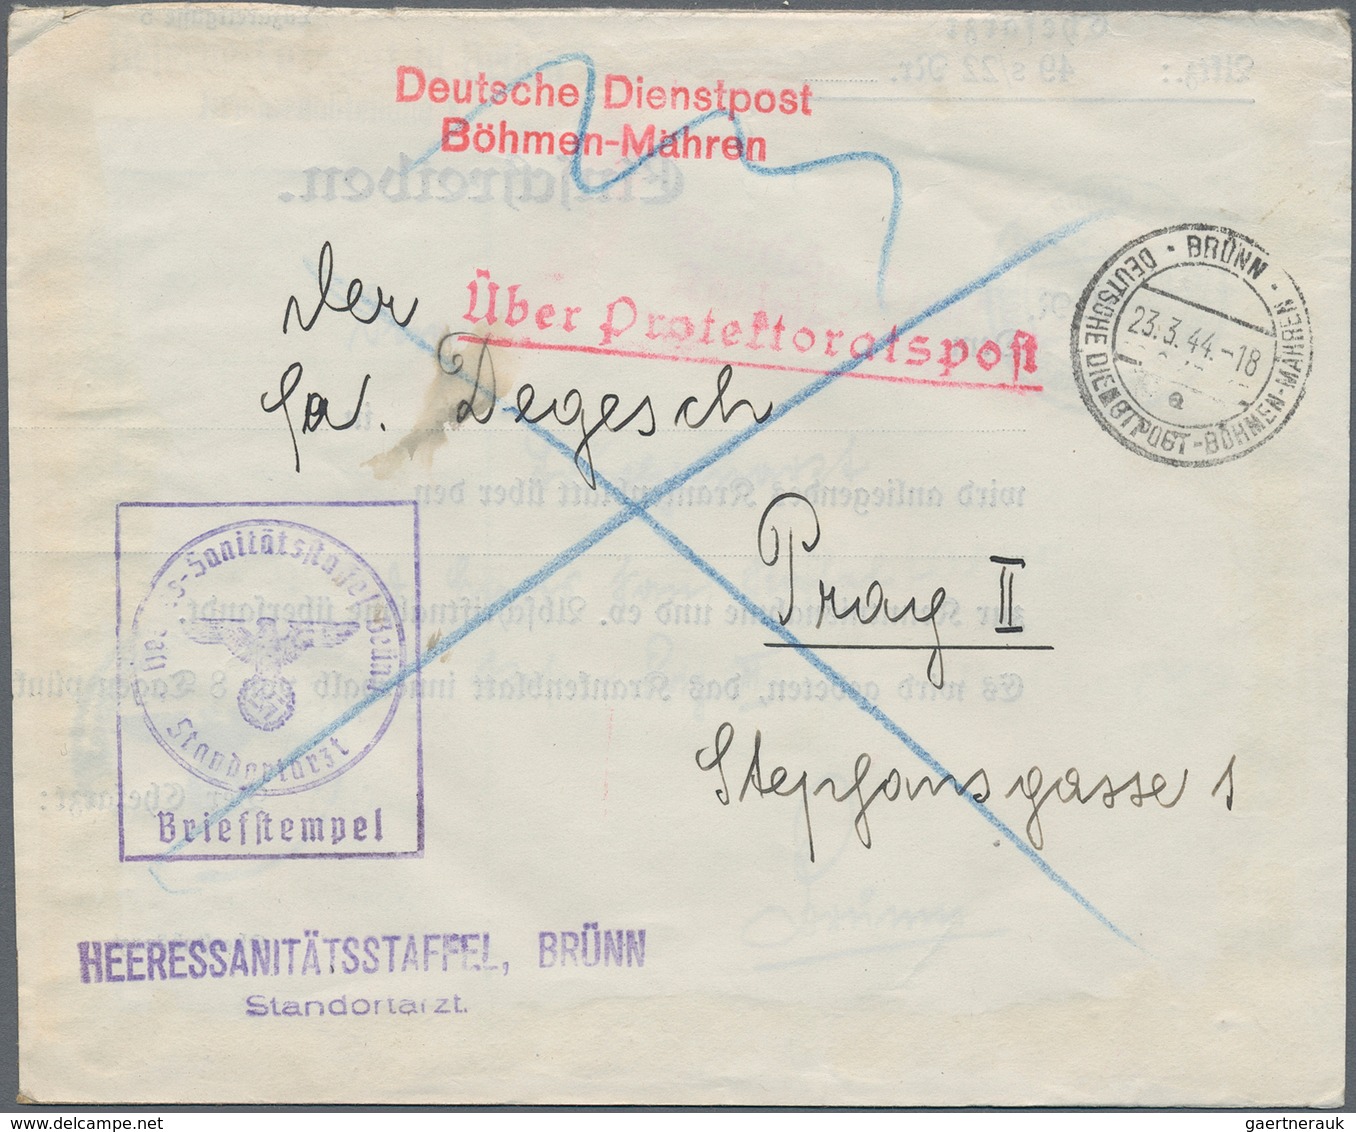 Deutschland: 1897/1945, substanzreicher Briefposten Deutsches Reich mit Nebengebieten und einigen au